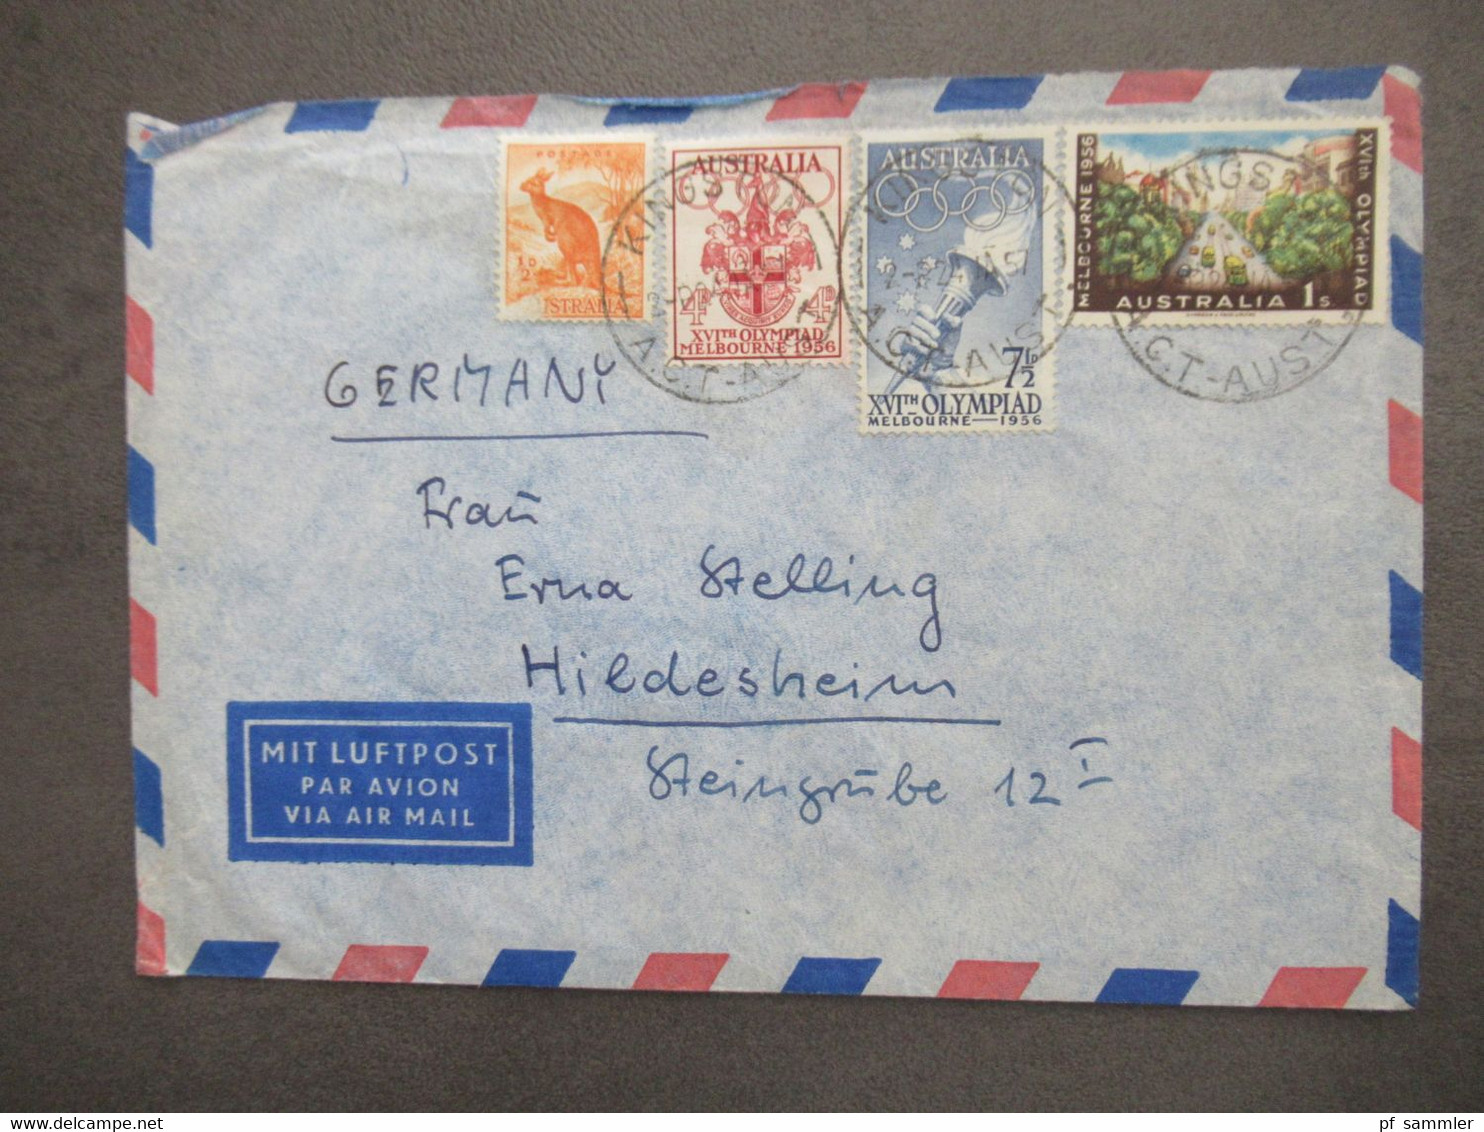 Australien Marken Von 1956 Mit Luftpost Air Mail Kingston - Hildesheim Aulandsbrief - Briefe U. Dokumente